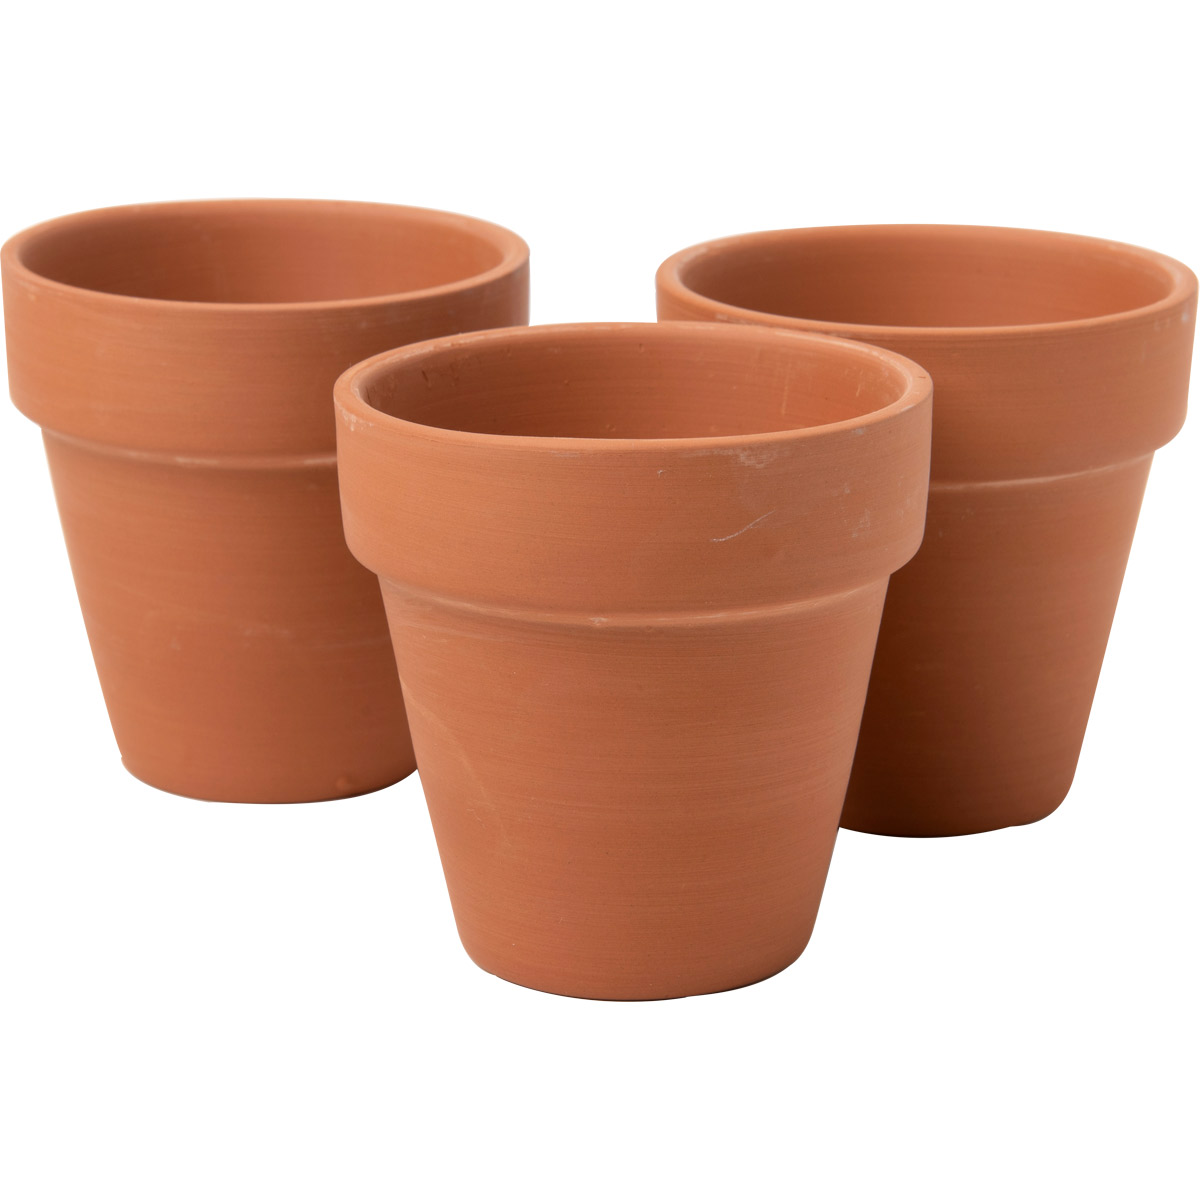 Politie tempo Begrafenis Shop Plaid Plaid ® Surfaces - Terracotta Flower Pot, Small, 3 pc. - 44904 -  44904 | Plaid Online